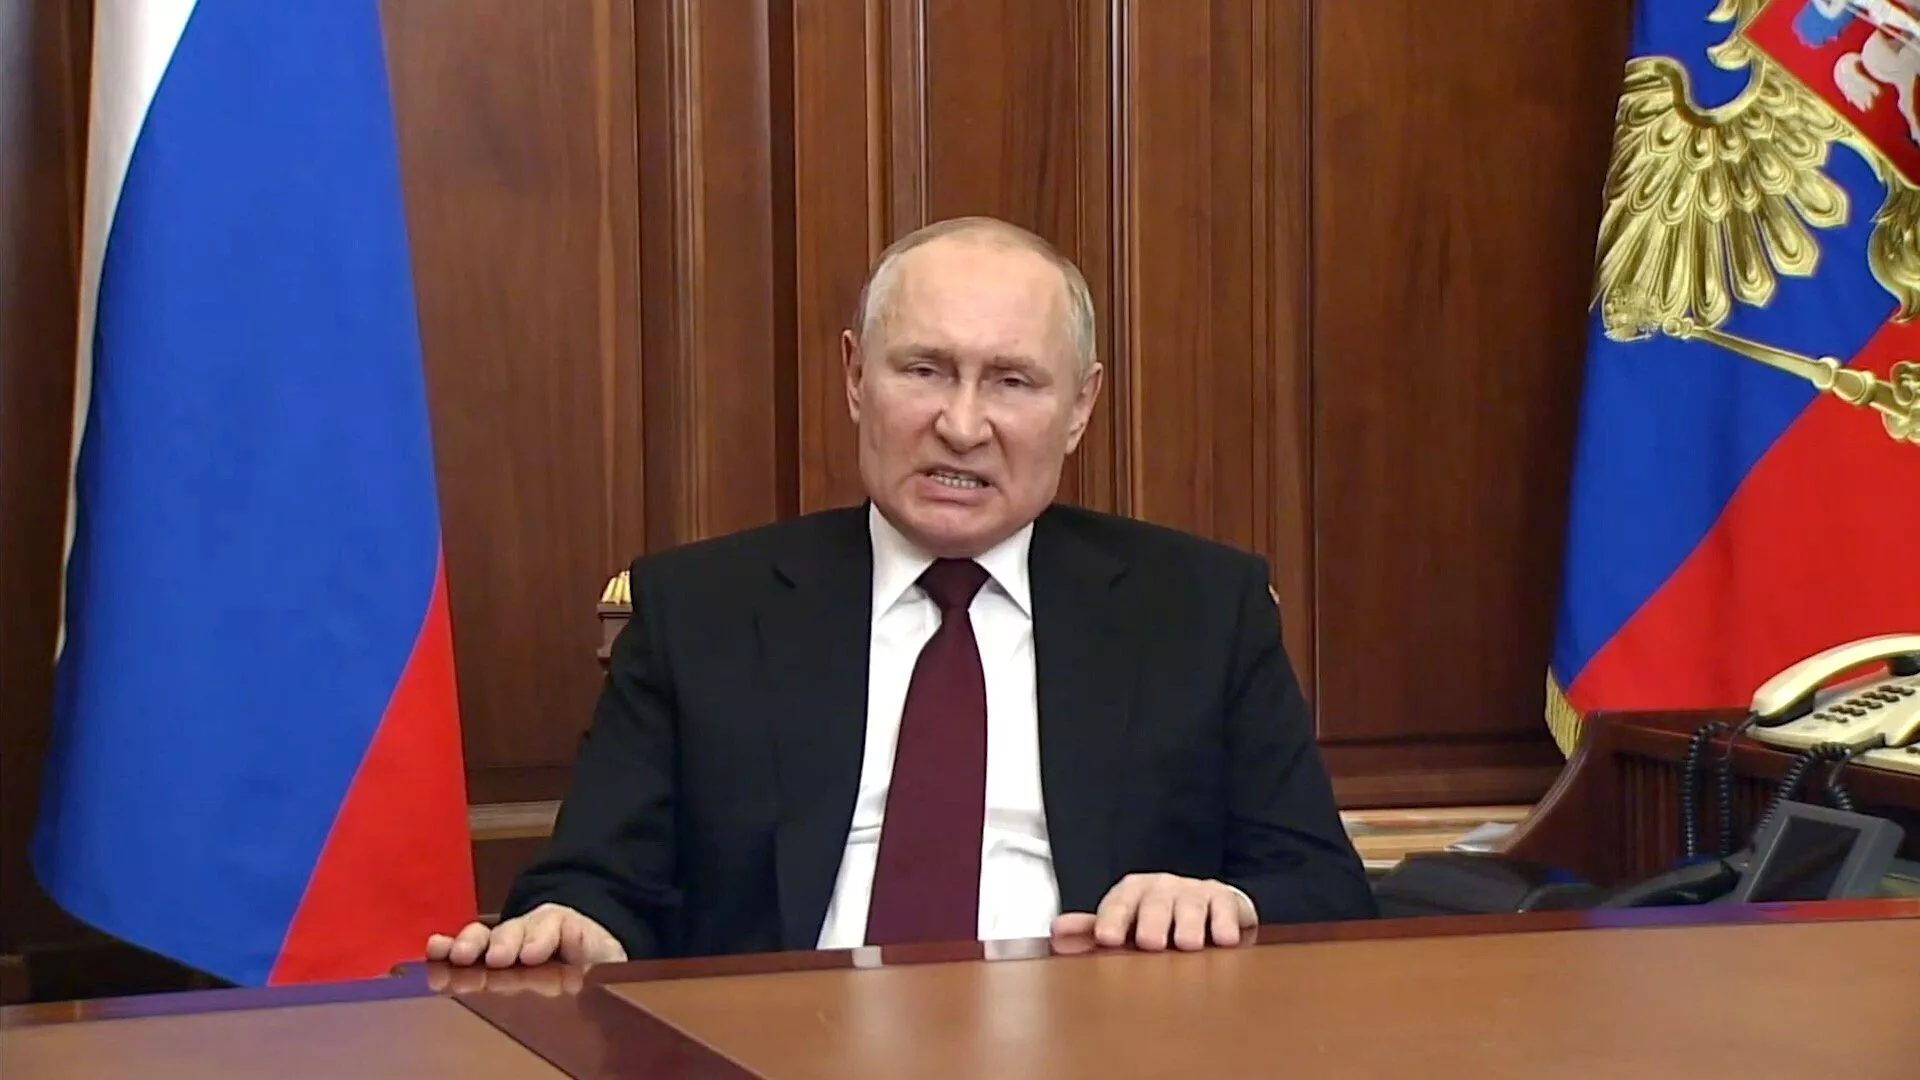 Все більше людей у Кремлі стверджуються в думці, що Путін хворий і не цілком у здоровому глузді